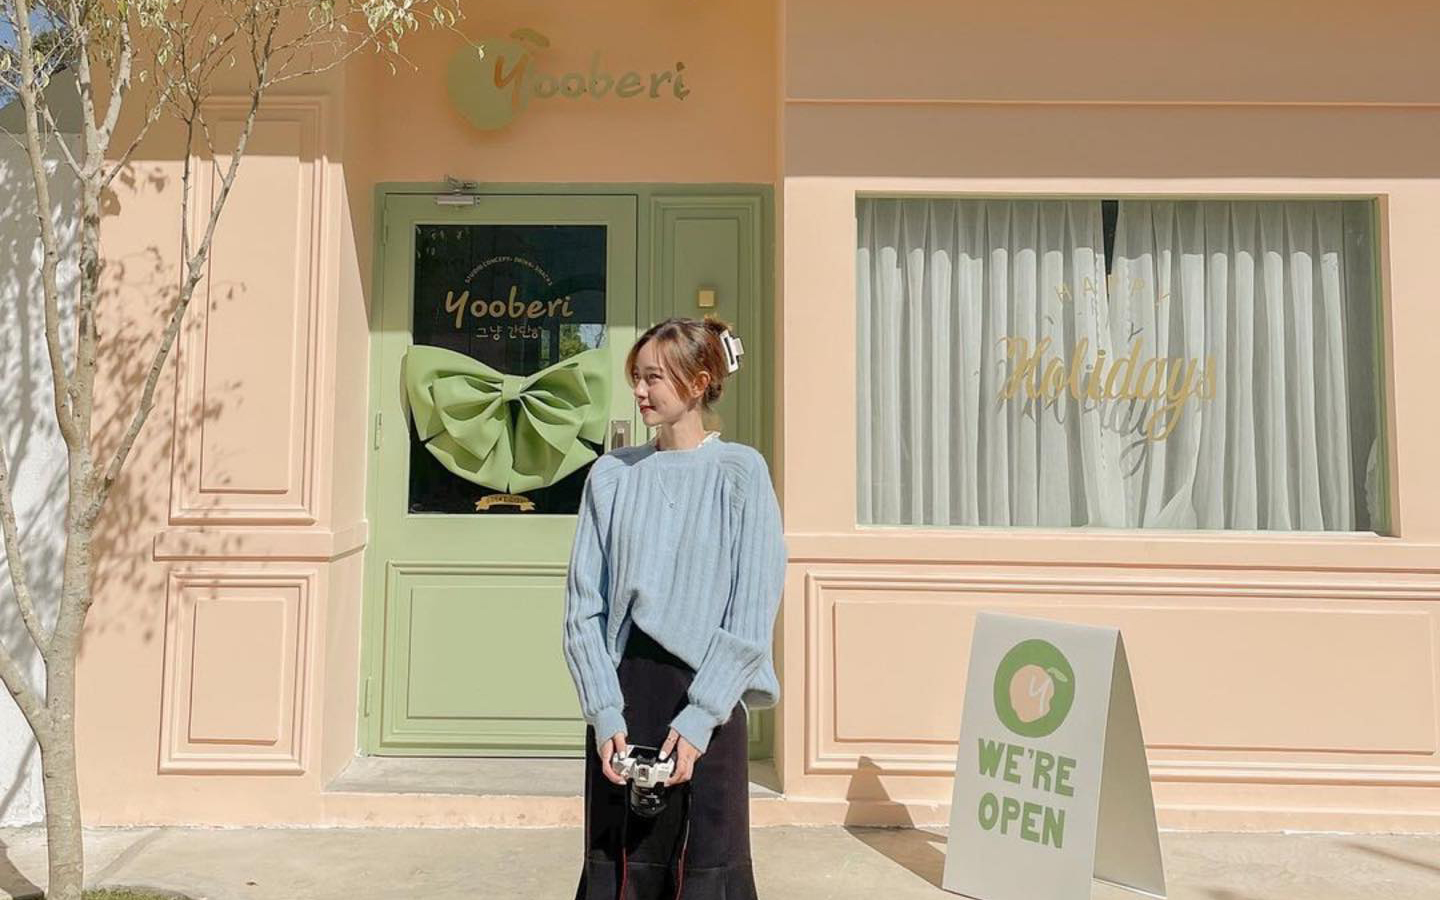 Yooberi Café studio – tiệm café ngọt ngào đậm chất Hàn Quốc